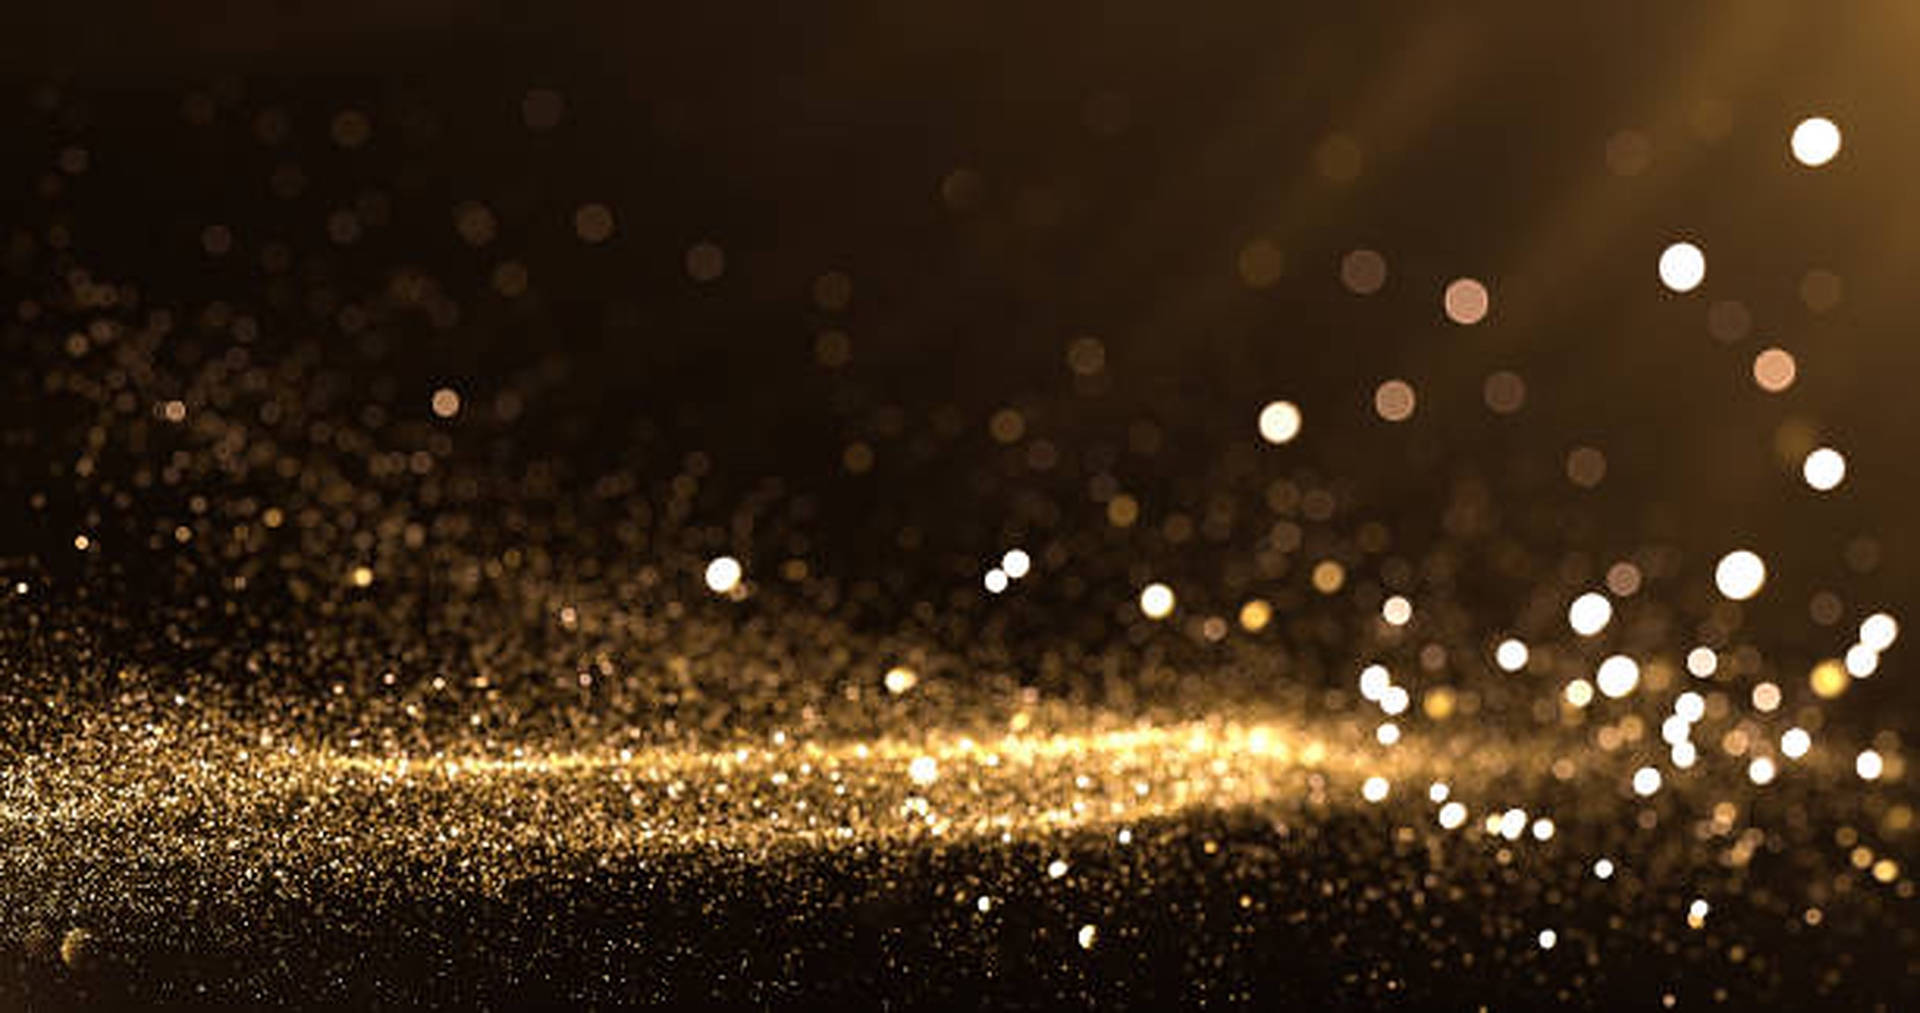 Nền hoàng kim óng ánh của tấm hình này khiến bạn như bước vào một không gian lấp lánh và rực rỡ. Hãy cùng chiêm ngưỡng những hạt vàng phát sáng với hình nền Gold Dust Shining Light Wallpaper.